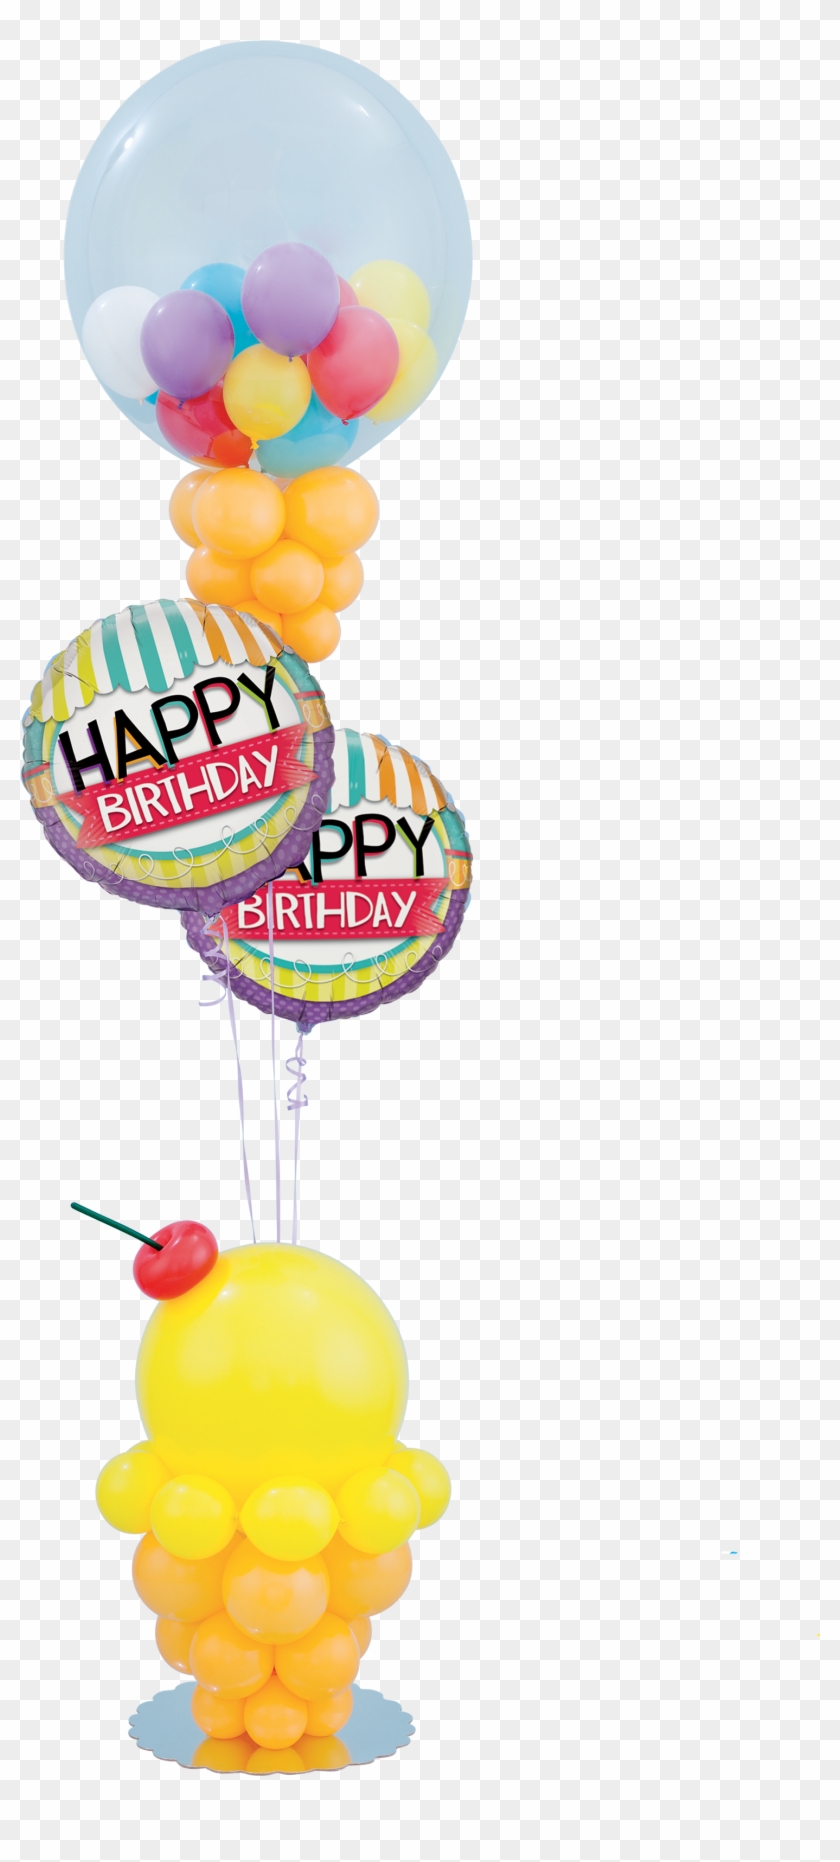 Ice Cream Birthday Balloon Decoration - Ice Cream Birthday Balloon Decoration #245609